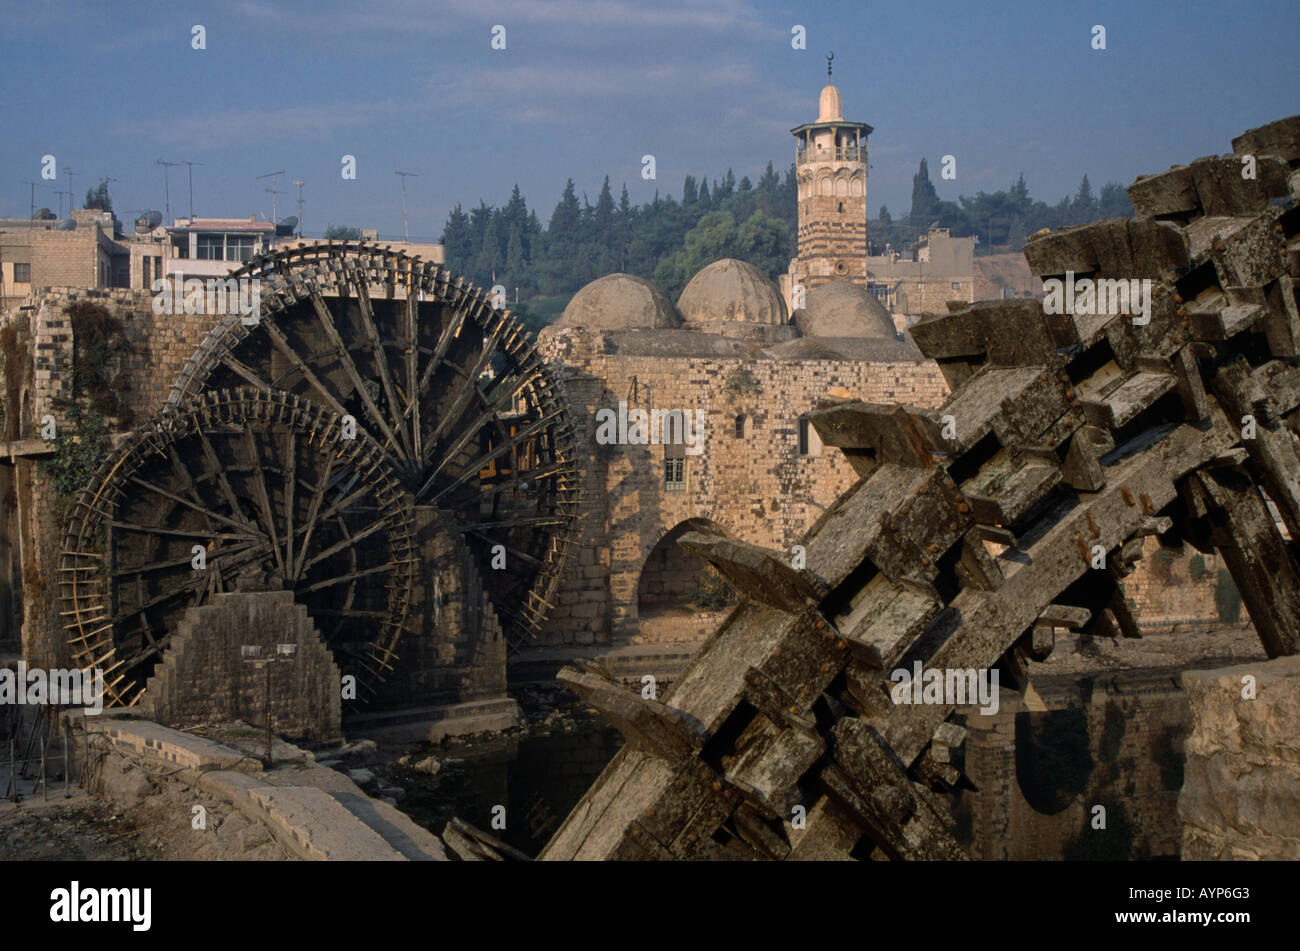 La Syrie Asie centrale Moyen Orient Hama norias ou roues à eau en bois sur le fleuve Oronte et Mosquée Al Nuri Banque D'Images